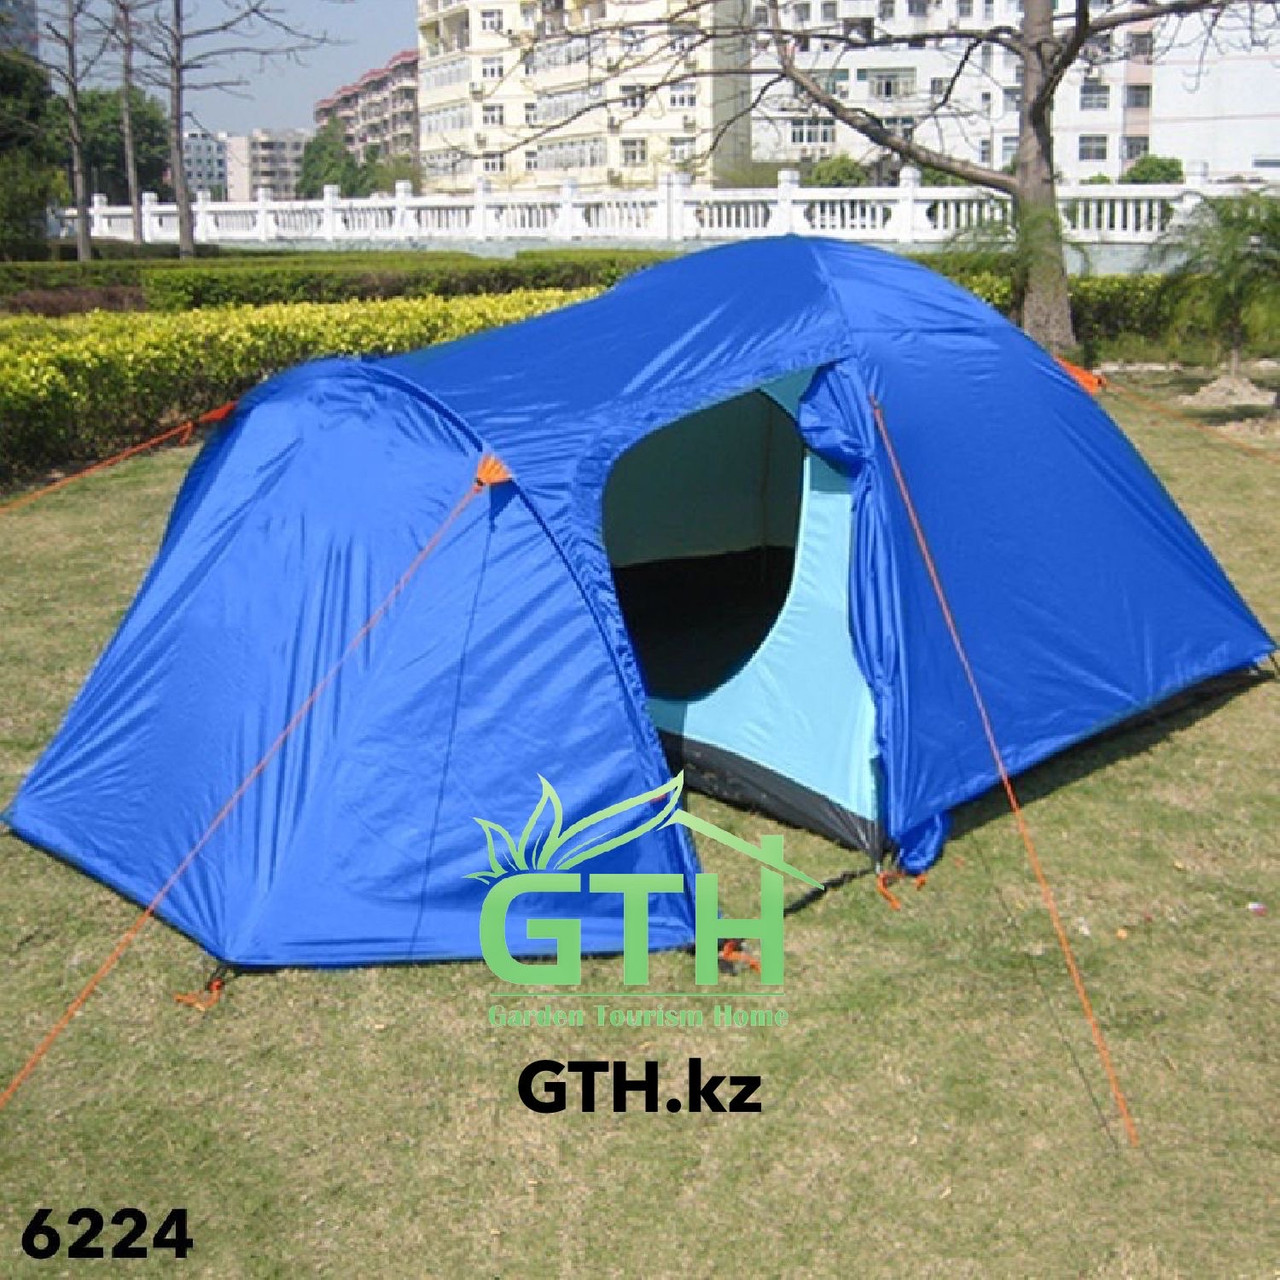 Двухслойная палатка на 4-х человек Tuohai-6224 (1036). 370x210x150 см. Доставка.